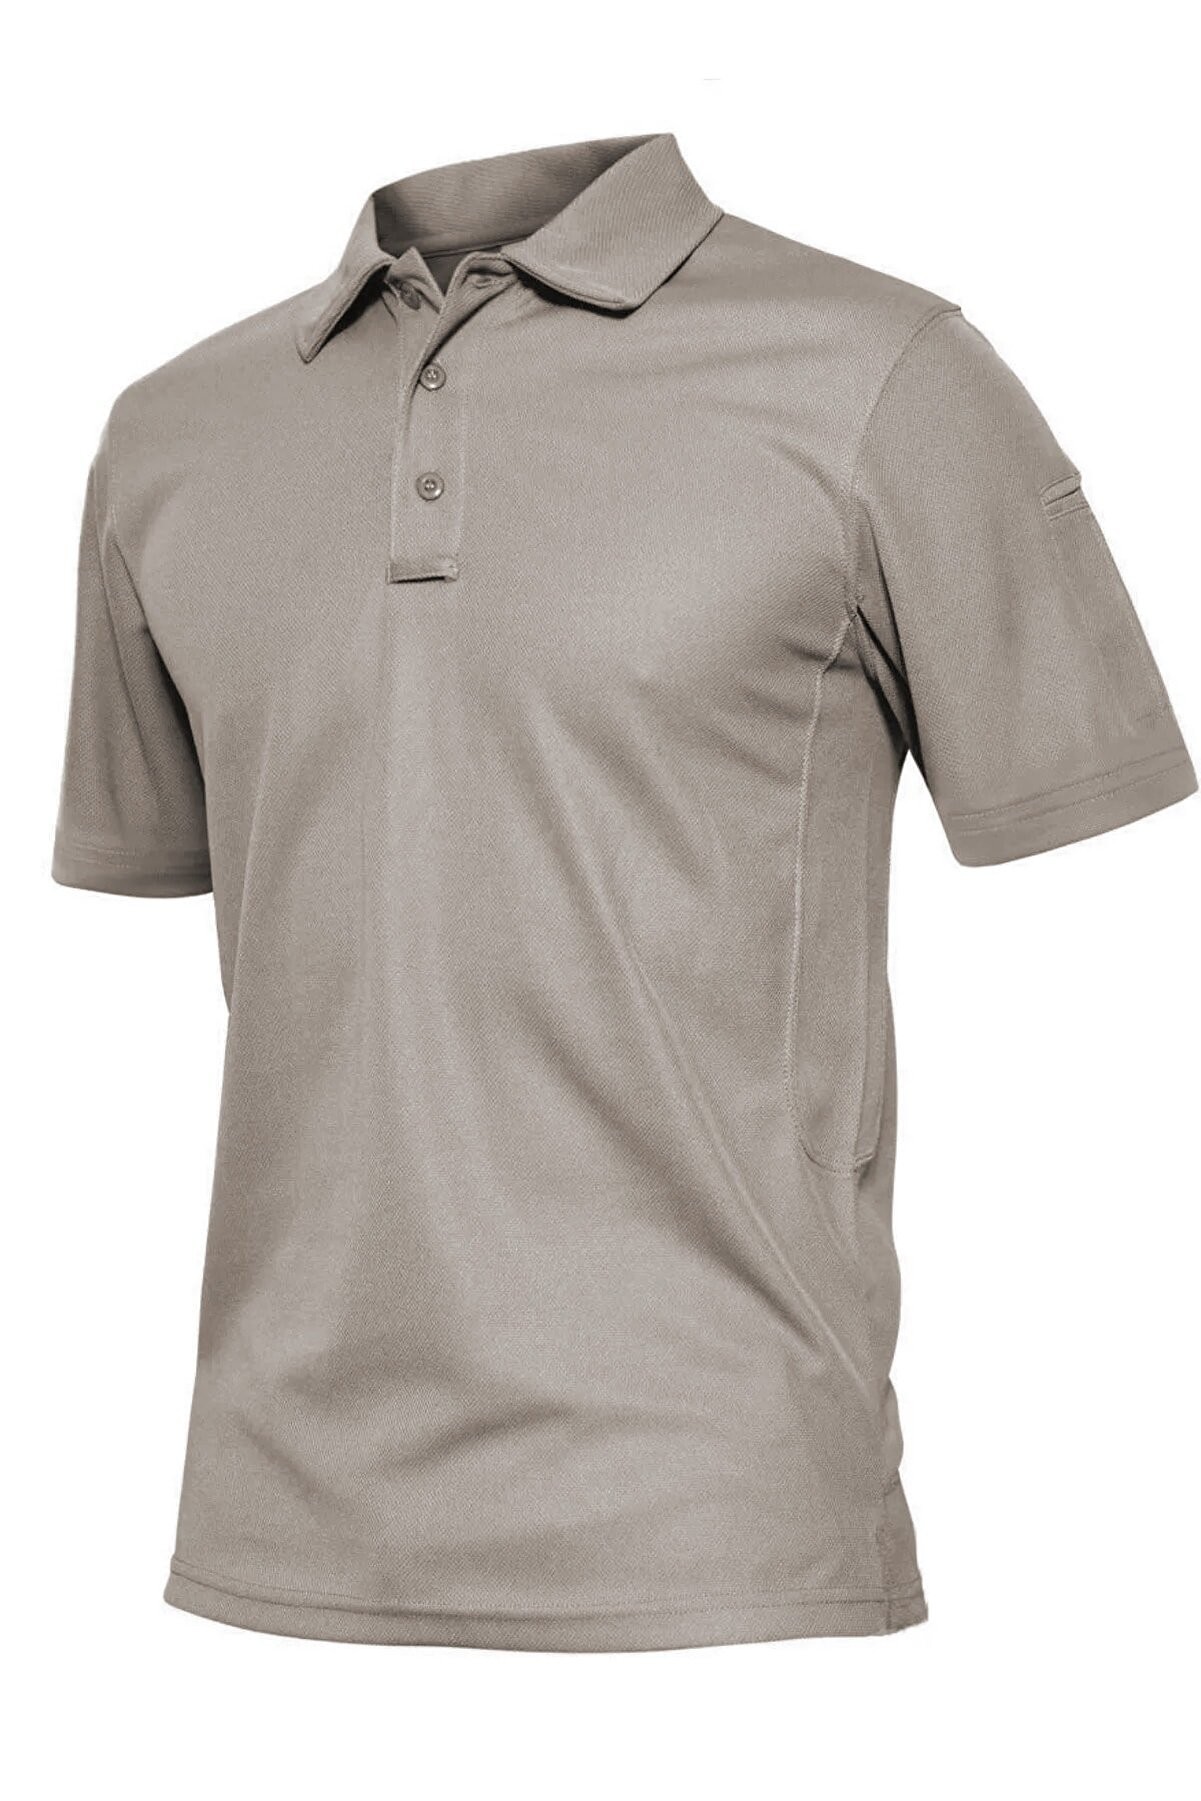 Ghassy Co. Erkek Taktik Polo Yaka Gömlek Hızlı Kuruma Nem Emici Performans Pique Jersey Golf T-shirt - Açık Gri